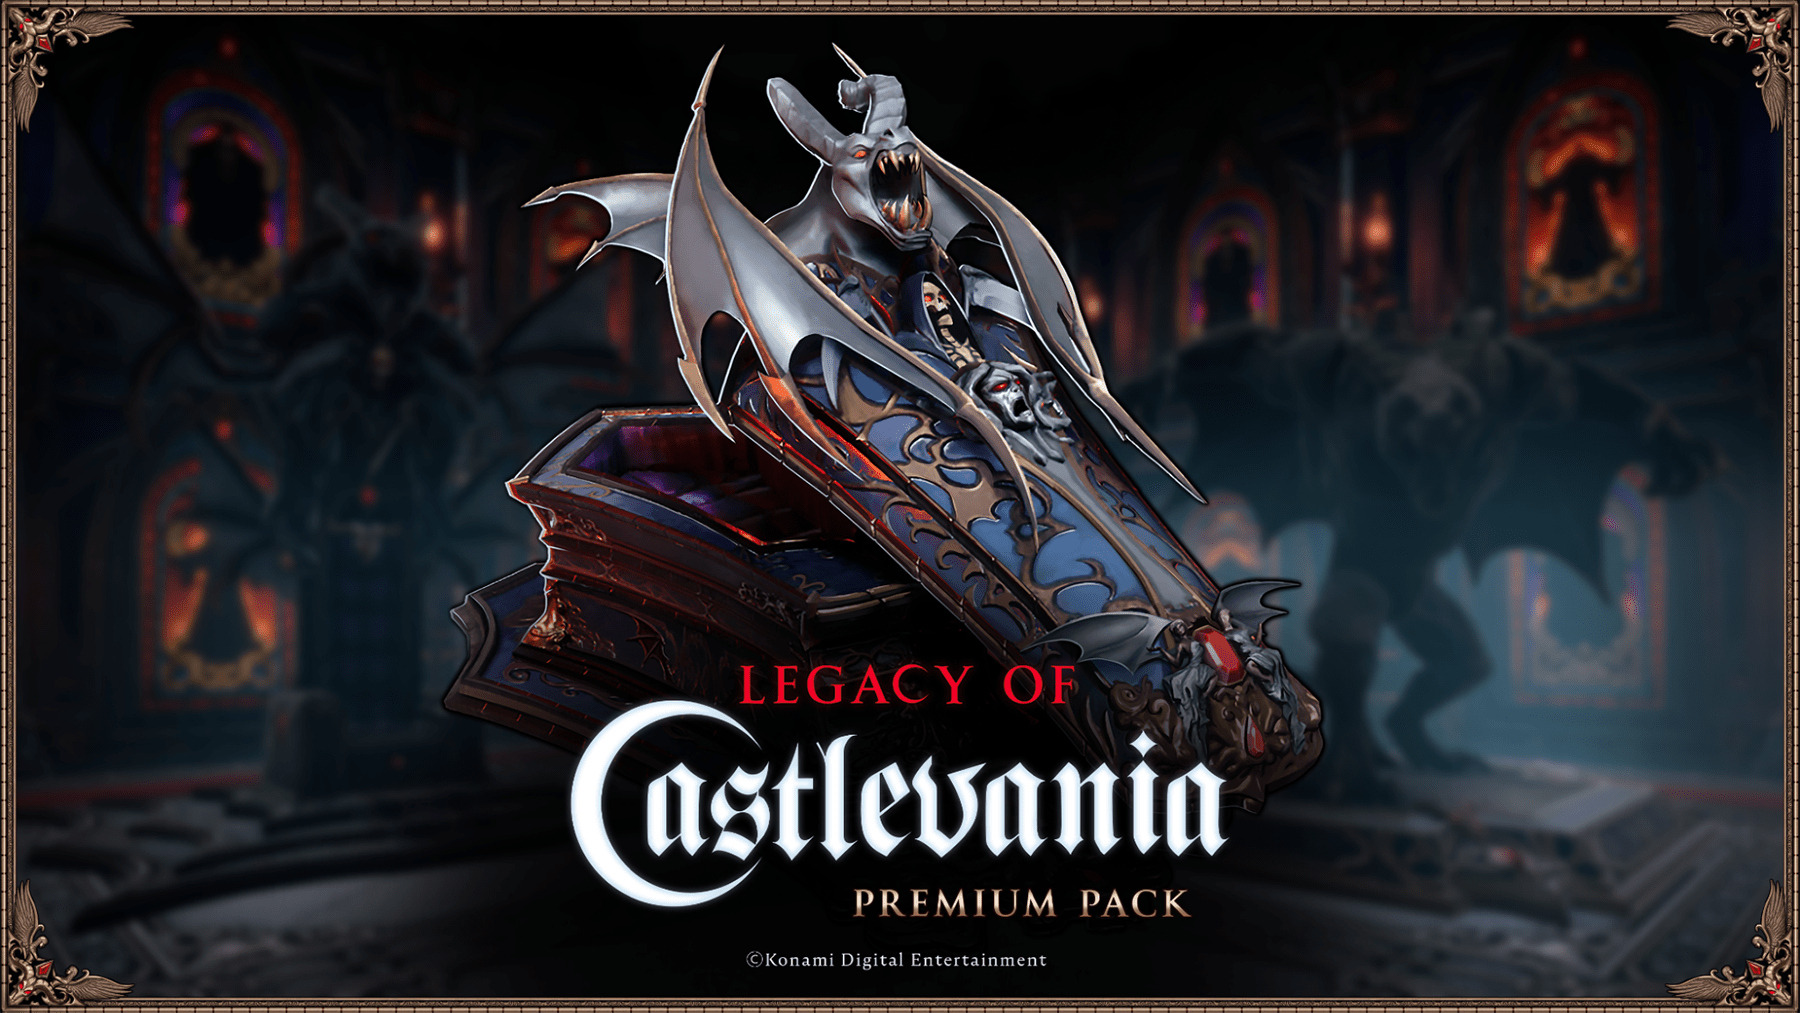 De lancering van de samenwerking tussen V Rising - Legacy of Castlevania vindt plaats op 8 mei